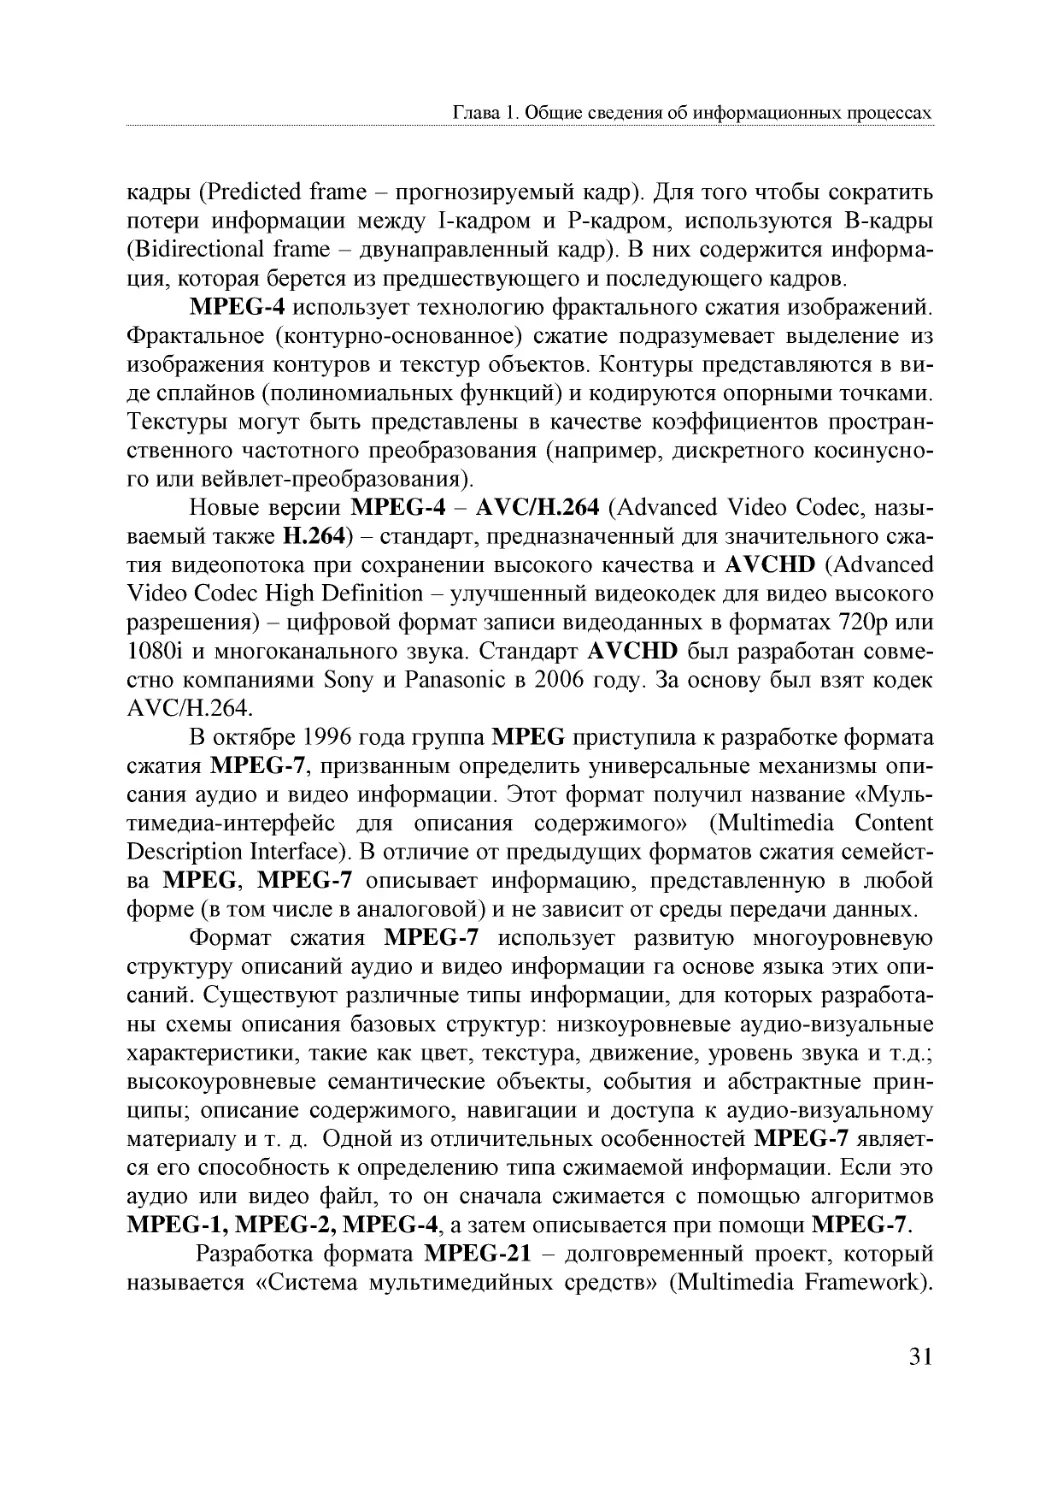 Informatika_Uchebnik_dlya_vuzov_2010 31